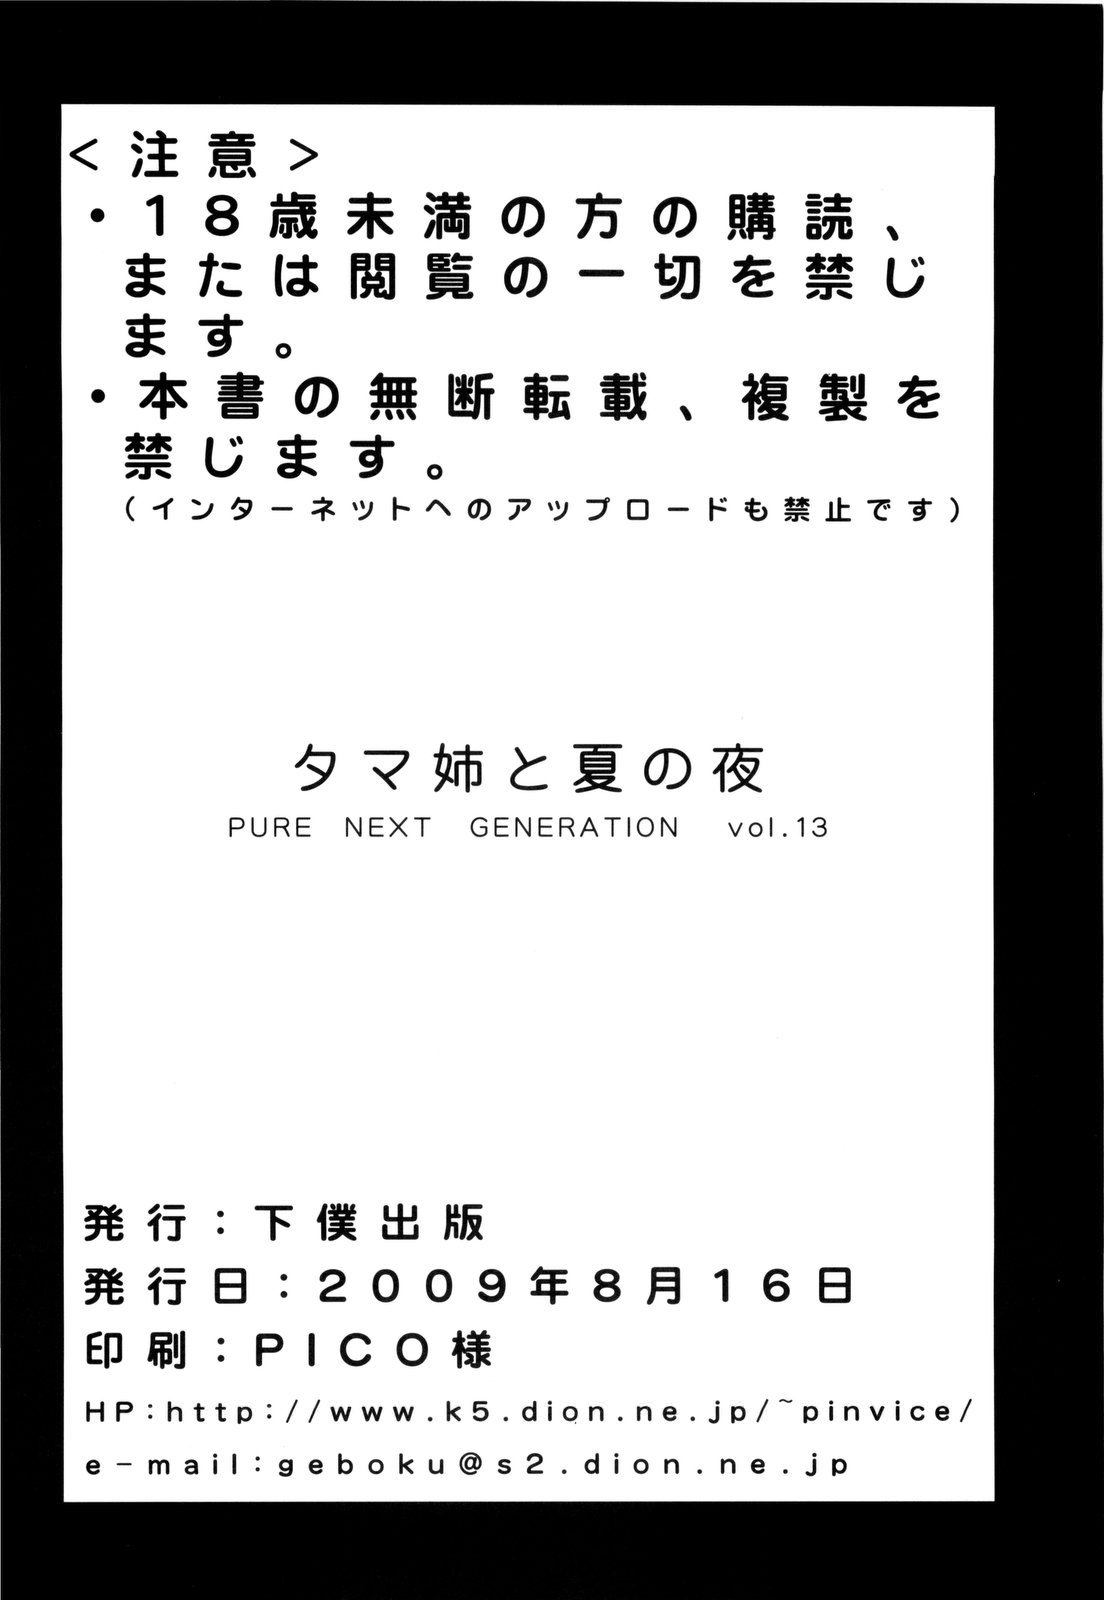 (C76)[Geboku Shuppan (PIN VICE)] PURE NEXT GENERATION Vol.13 Tame-ne to Natsu no Yoru (ToHeart 2) (C76)[下僕出版 (PIN・VICE)] PURE NEXT GENERATION Vol.13 タマ姉と夏の夜 (ToHeart 2)